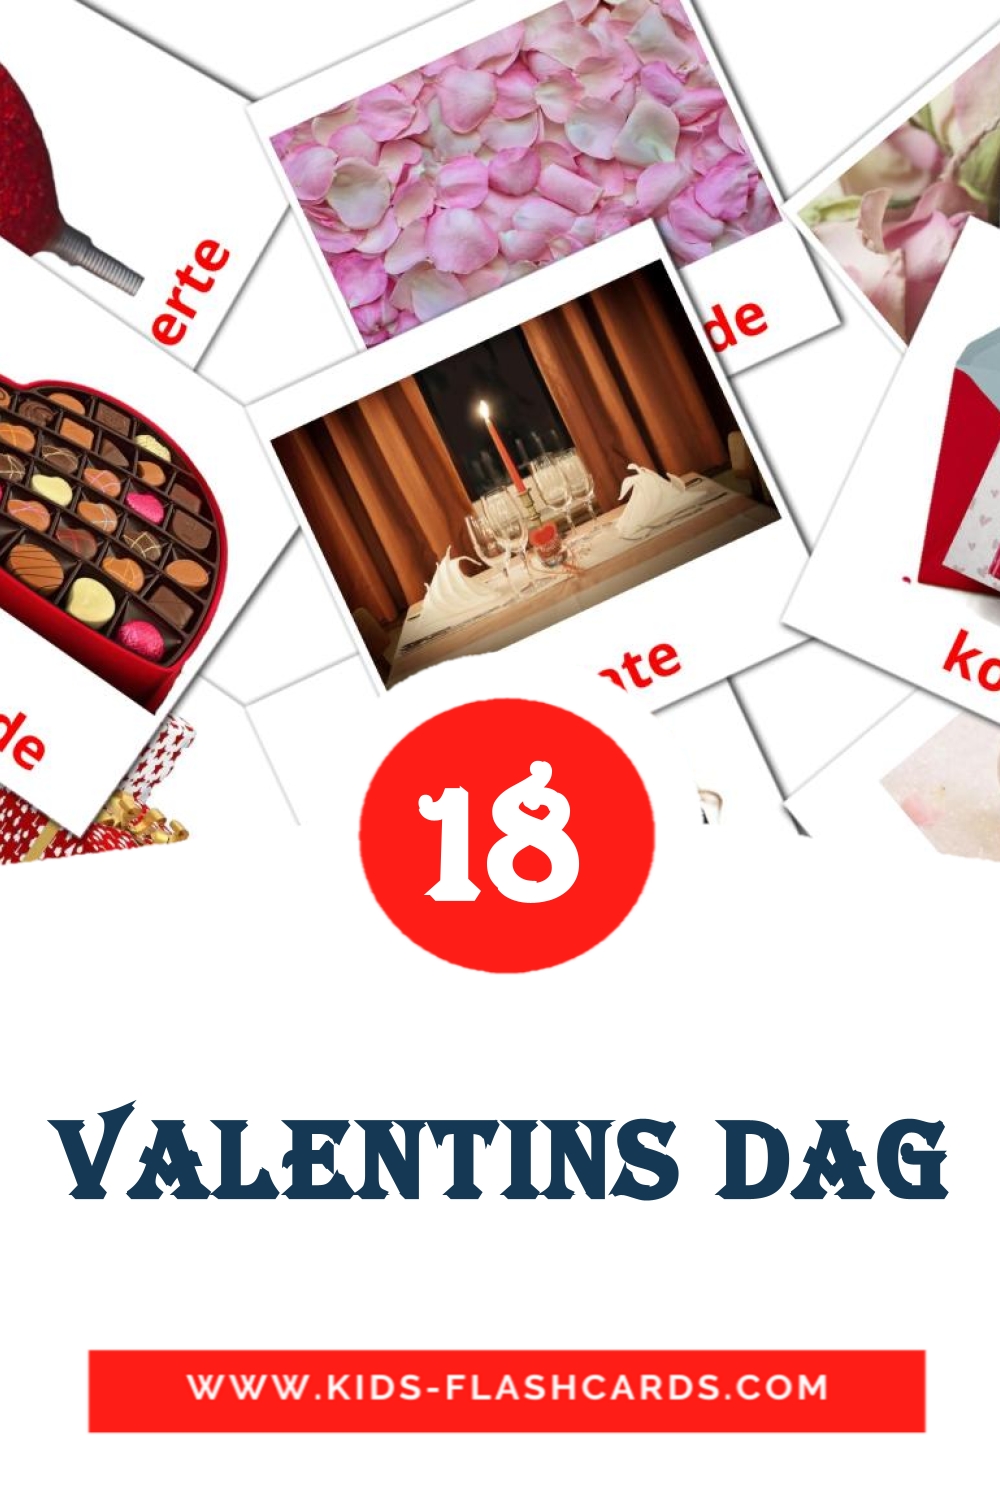 18 Cartões com Imagens de Valentins Dag para Jardim de Infância em dansk